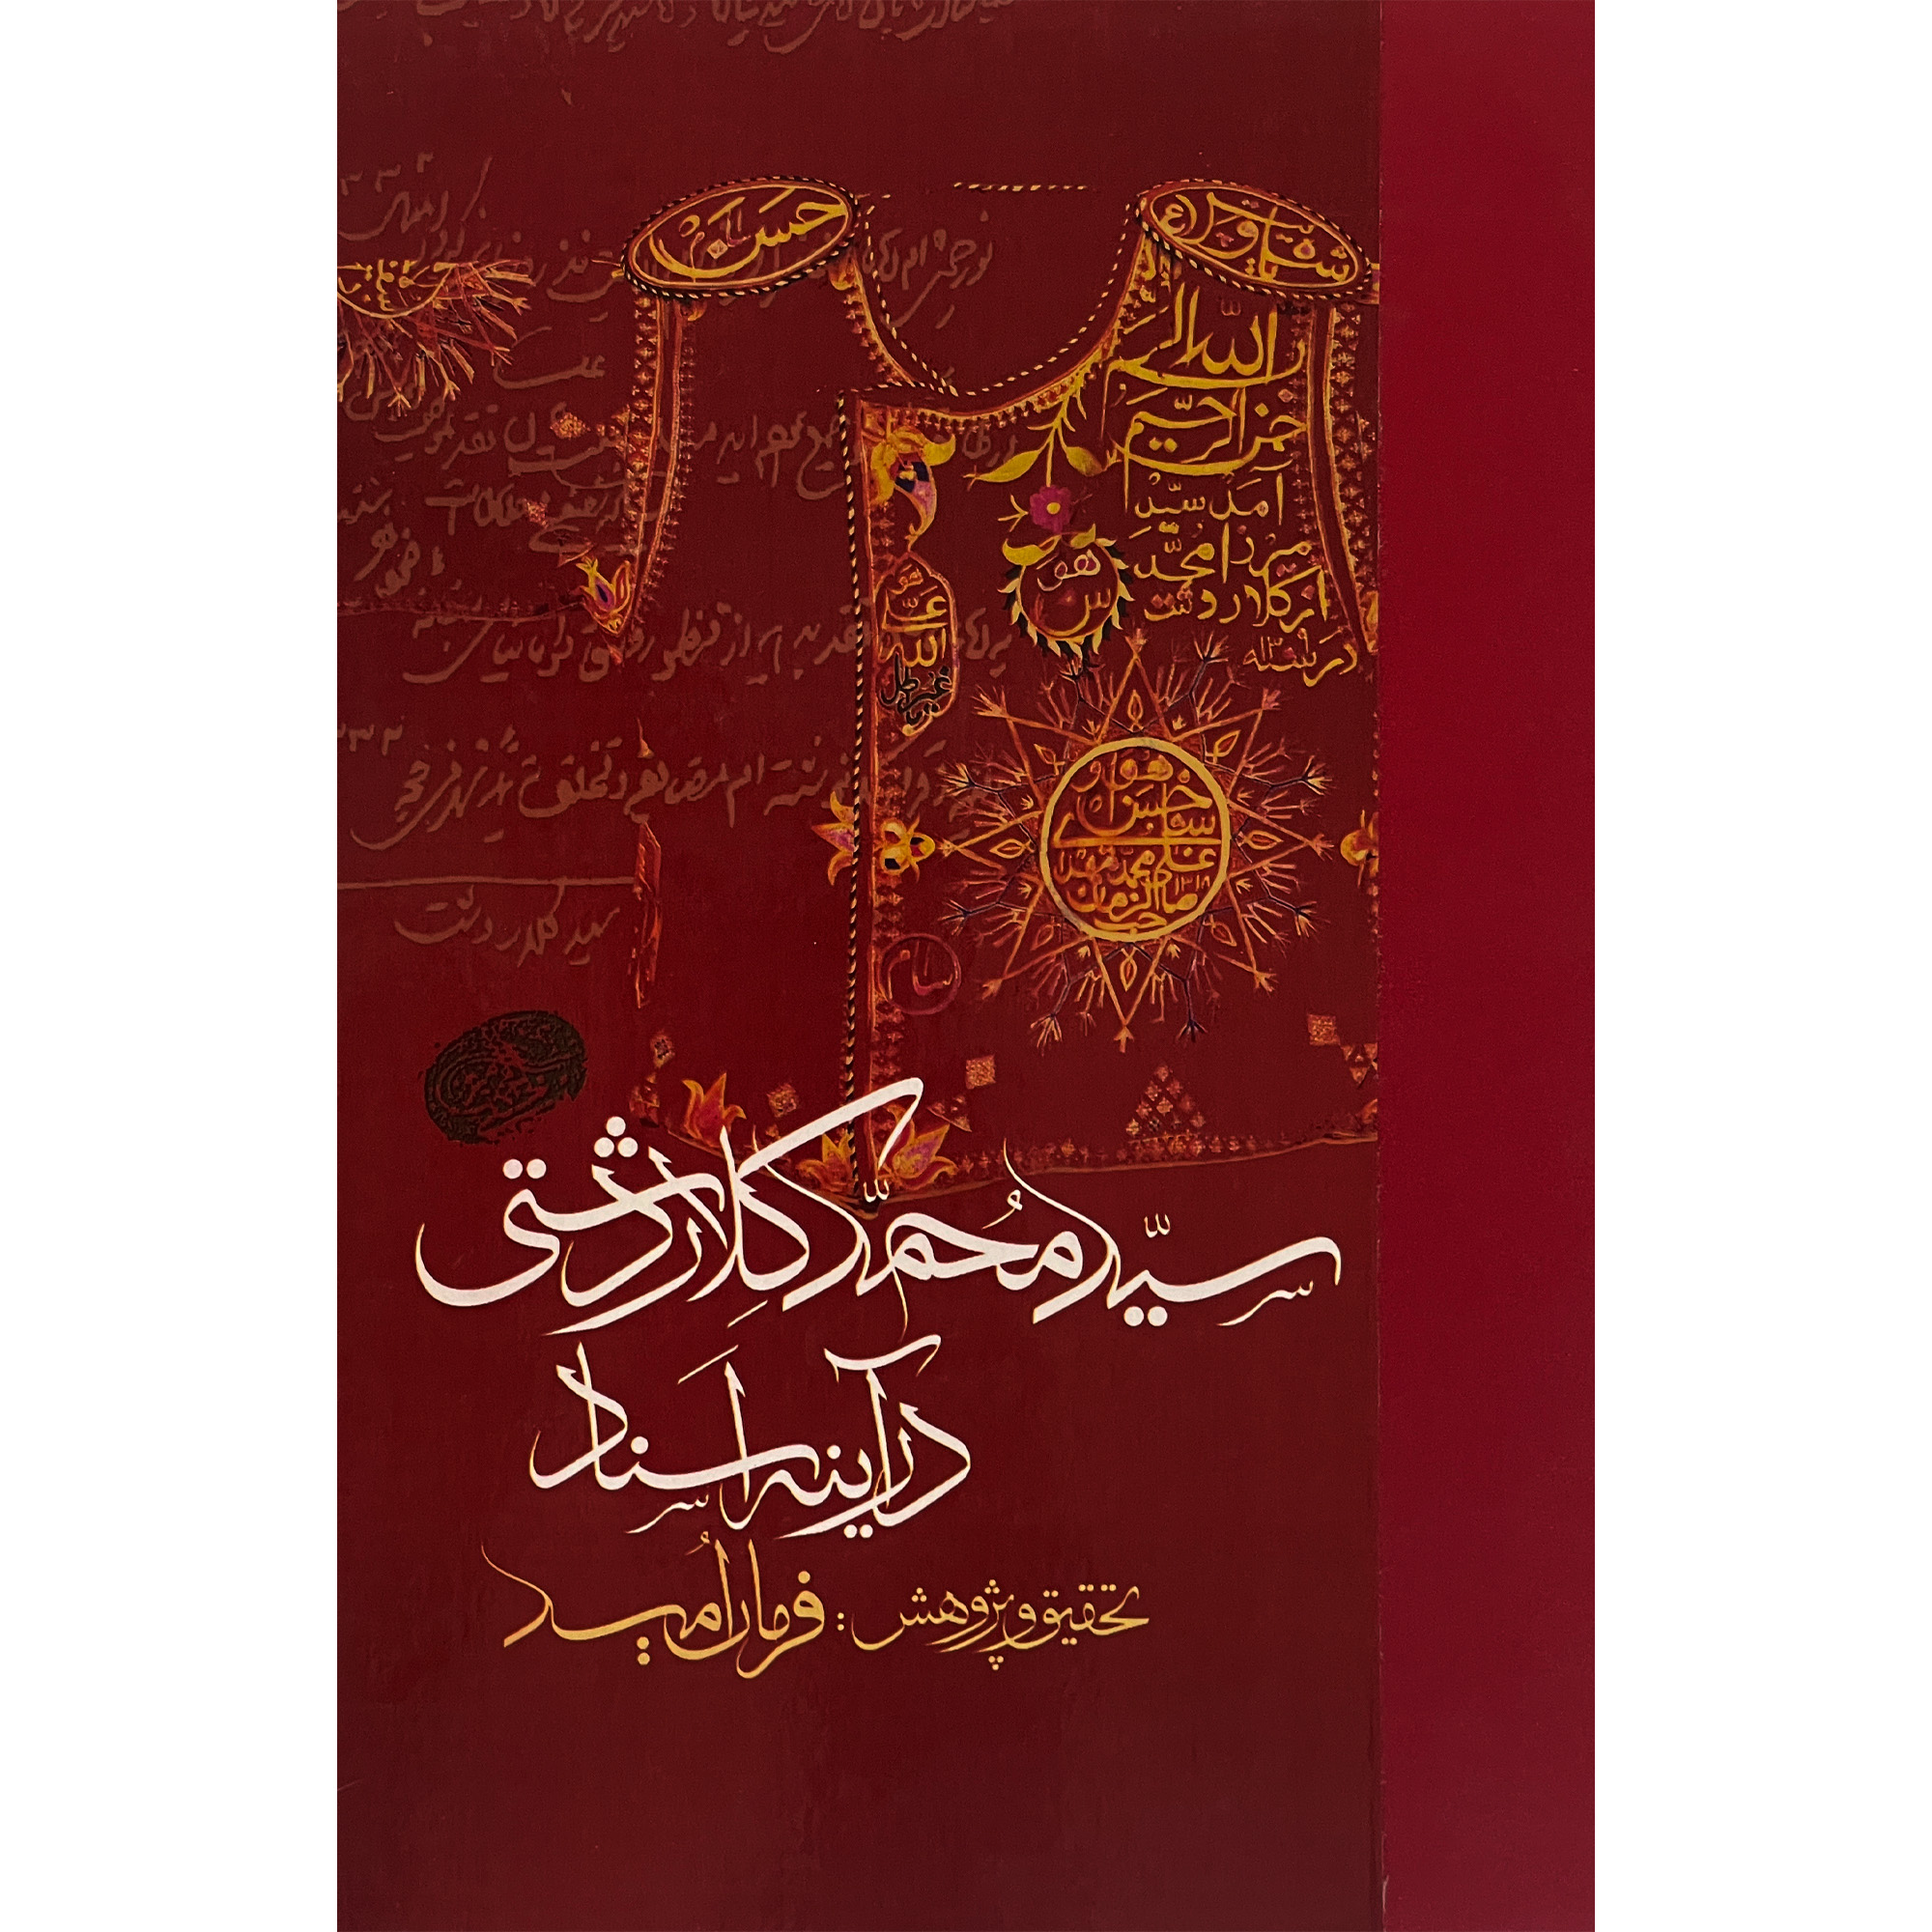 کتاب سيد محمد كلاردشتی در آينه اسناد اثر فرمان اميد انتشارات مولی